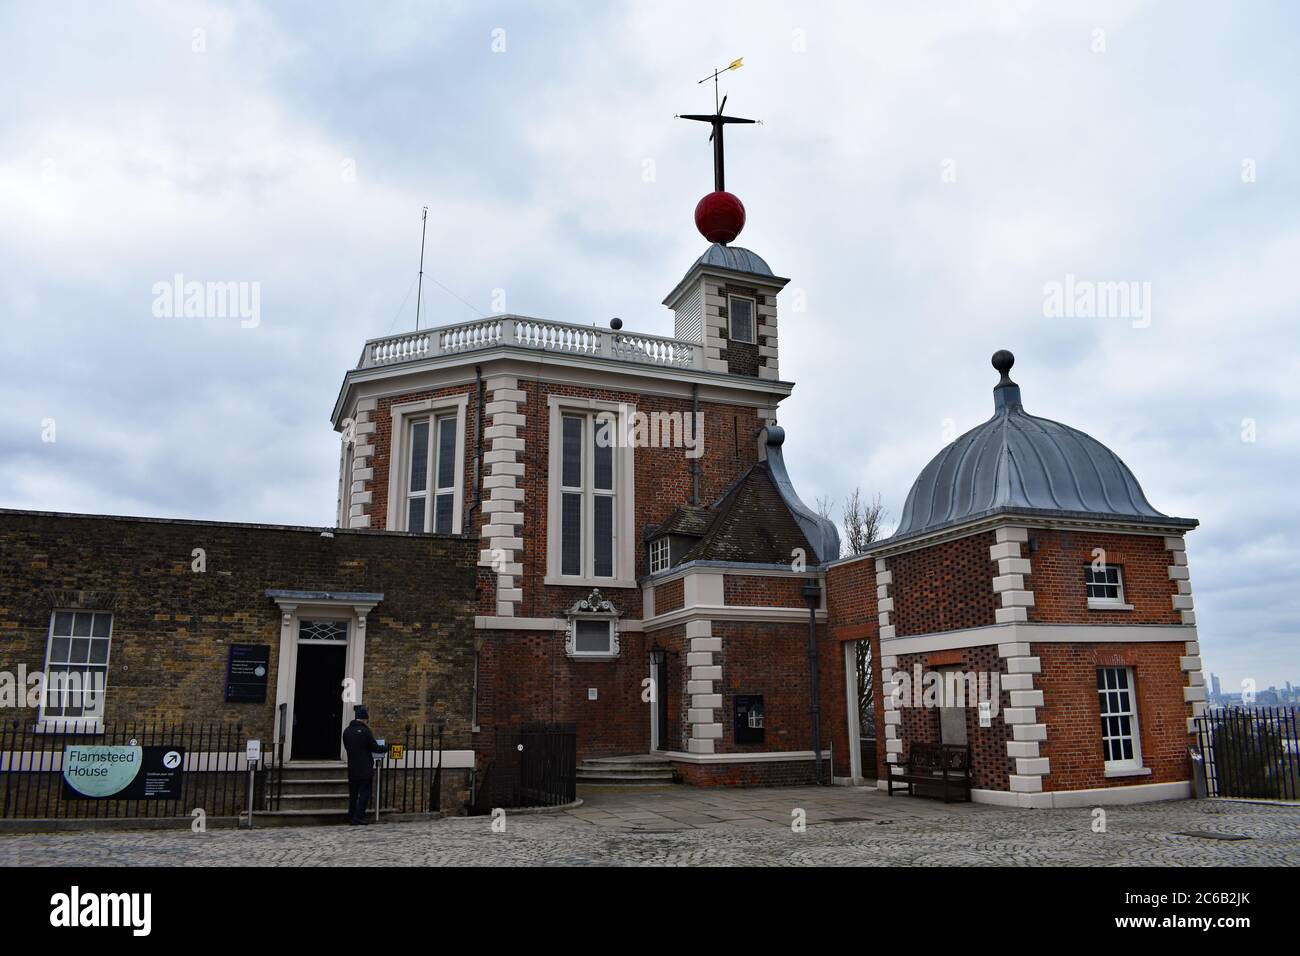 Un visitatore che sta per entrare nella Flamsteed House presso l'Osservatorio reale di Greenwich Park. Una palla rossa e una paletta meteorologica sopra la Sala Ottagon. Foto Stock